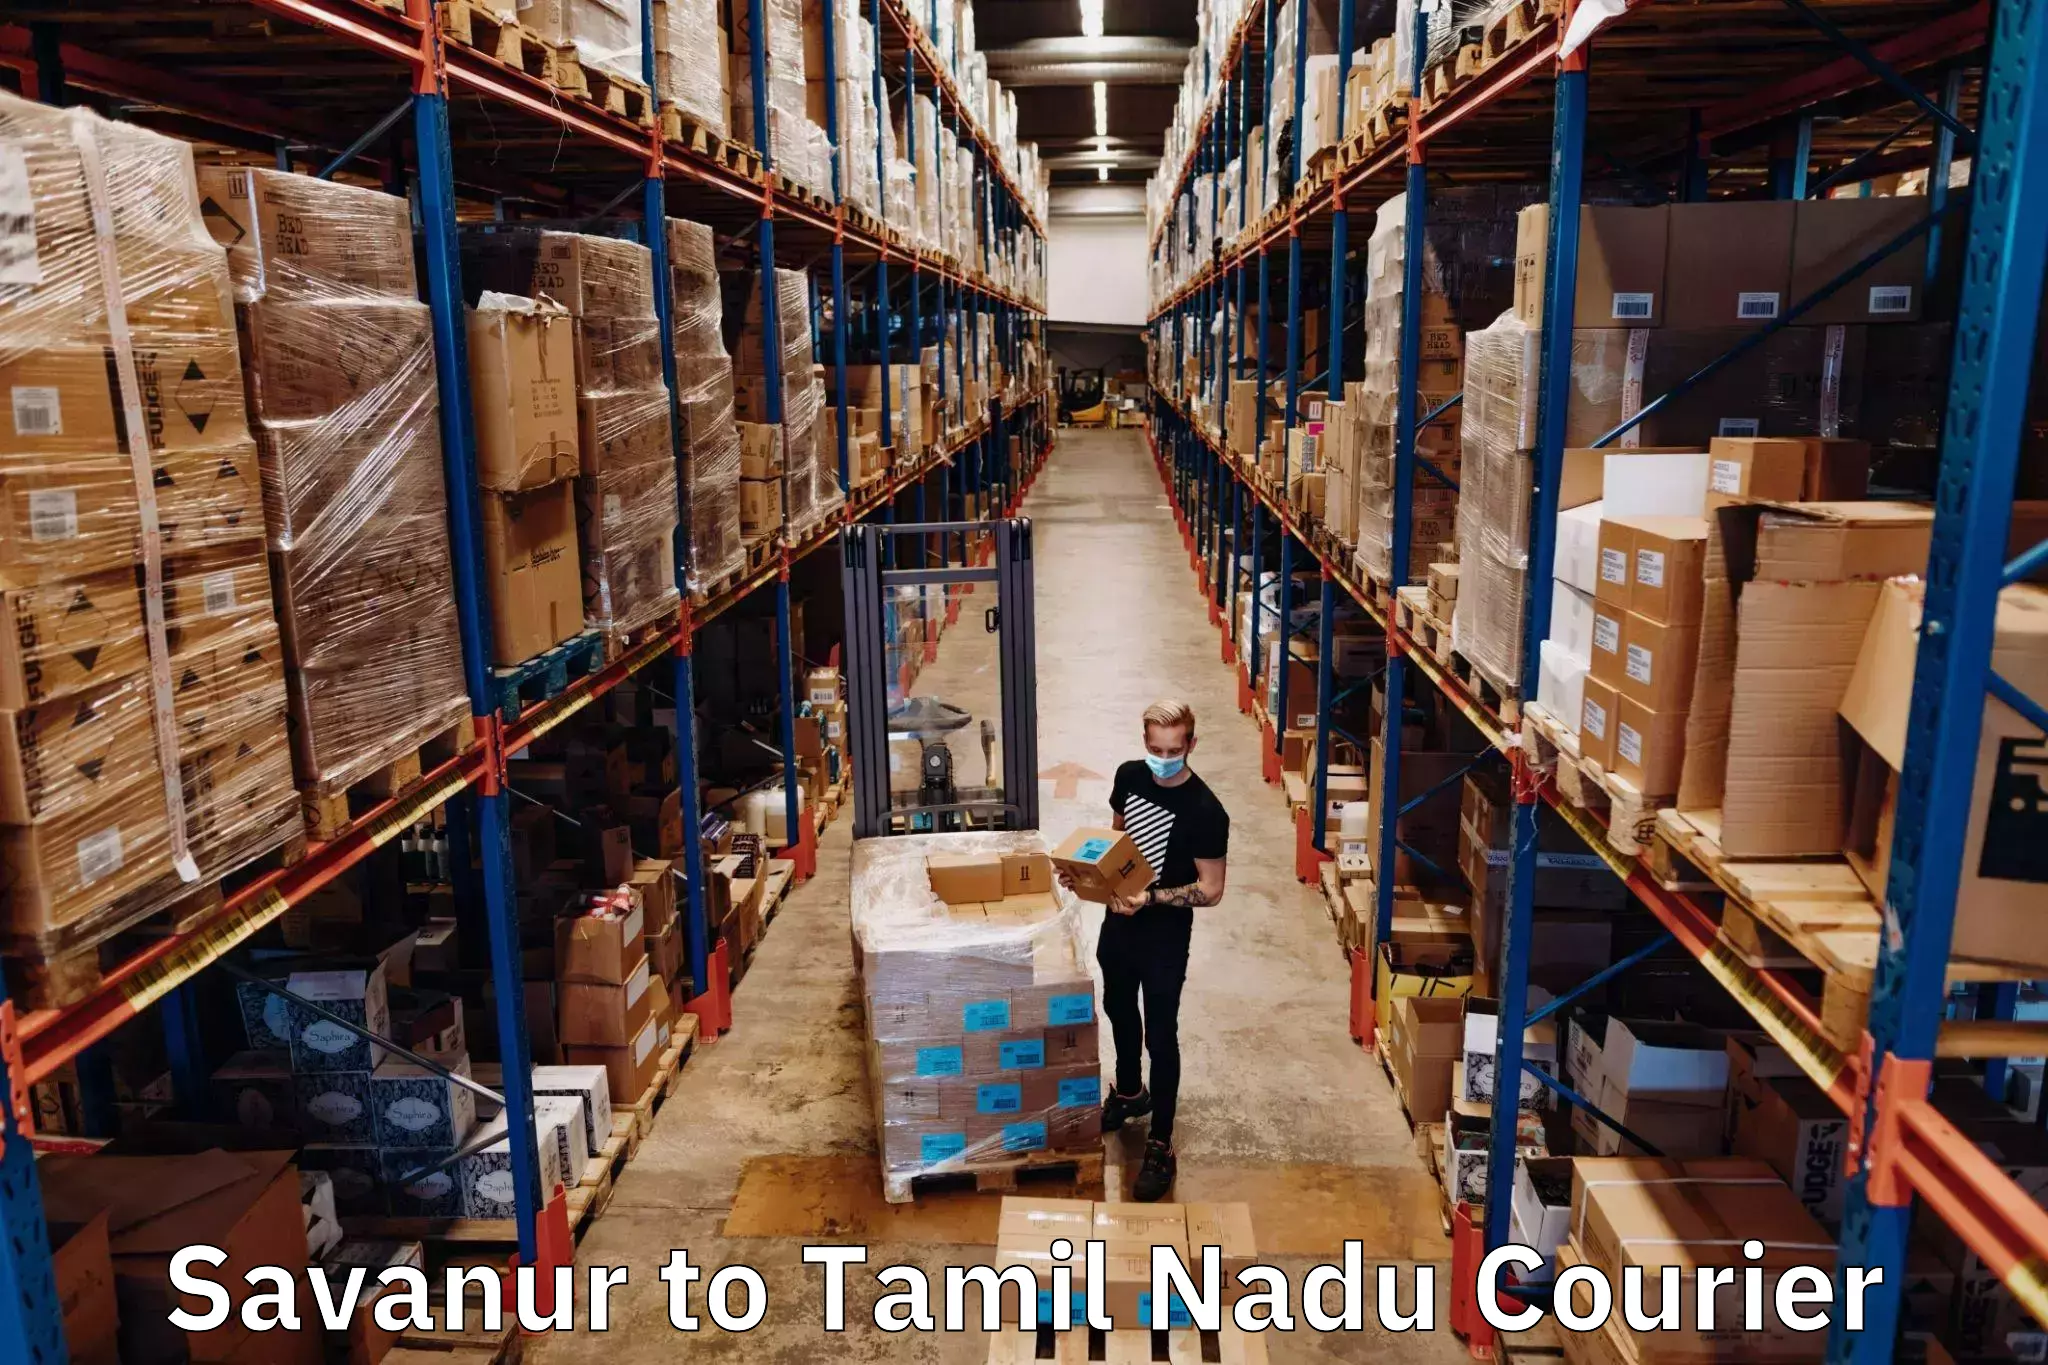 Professional courier handling Savanur to Kulithalai